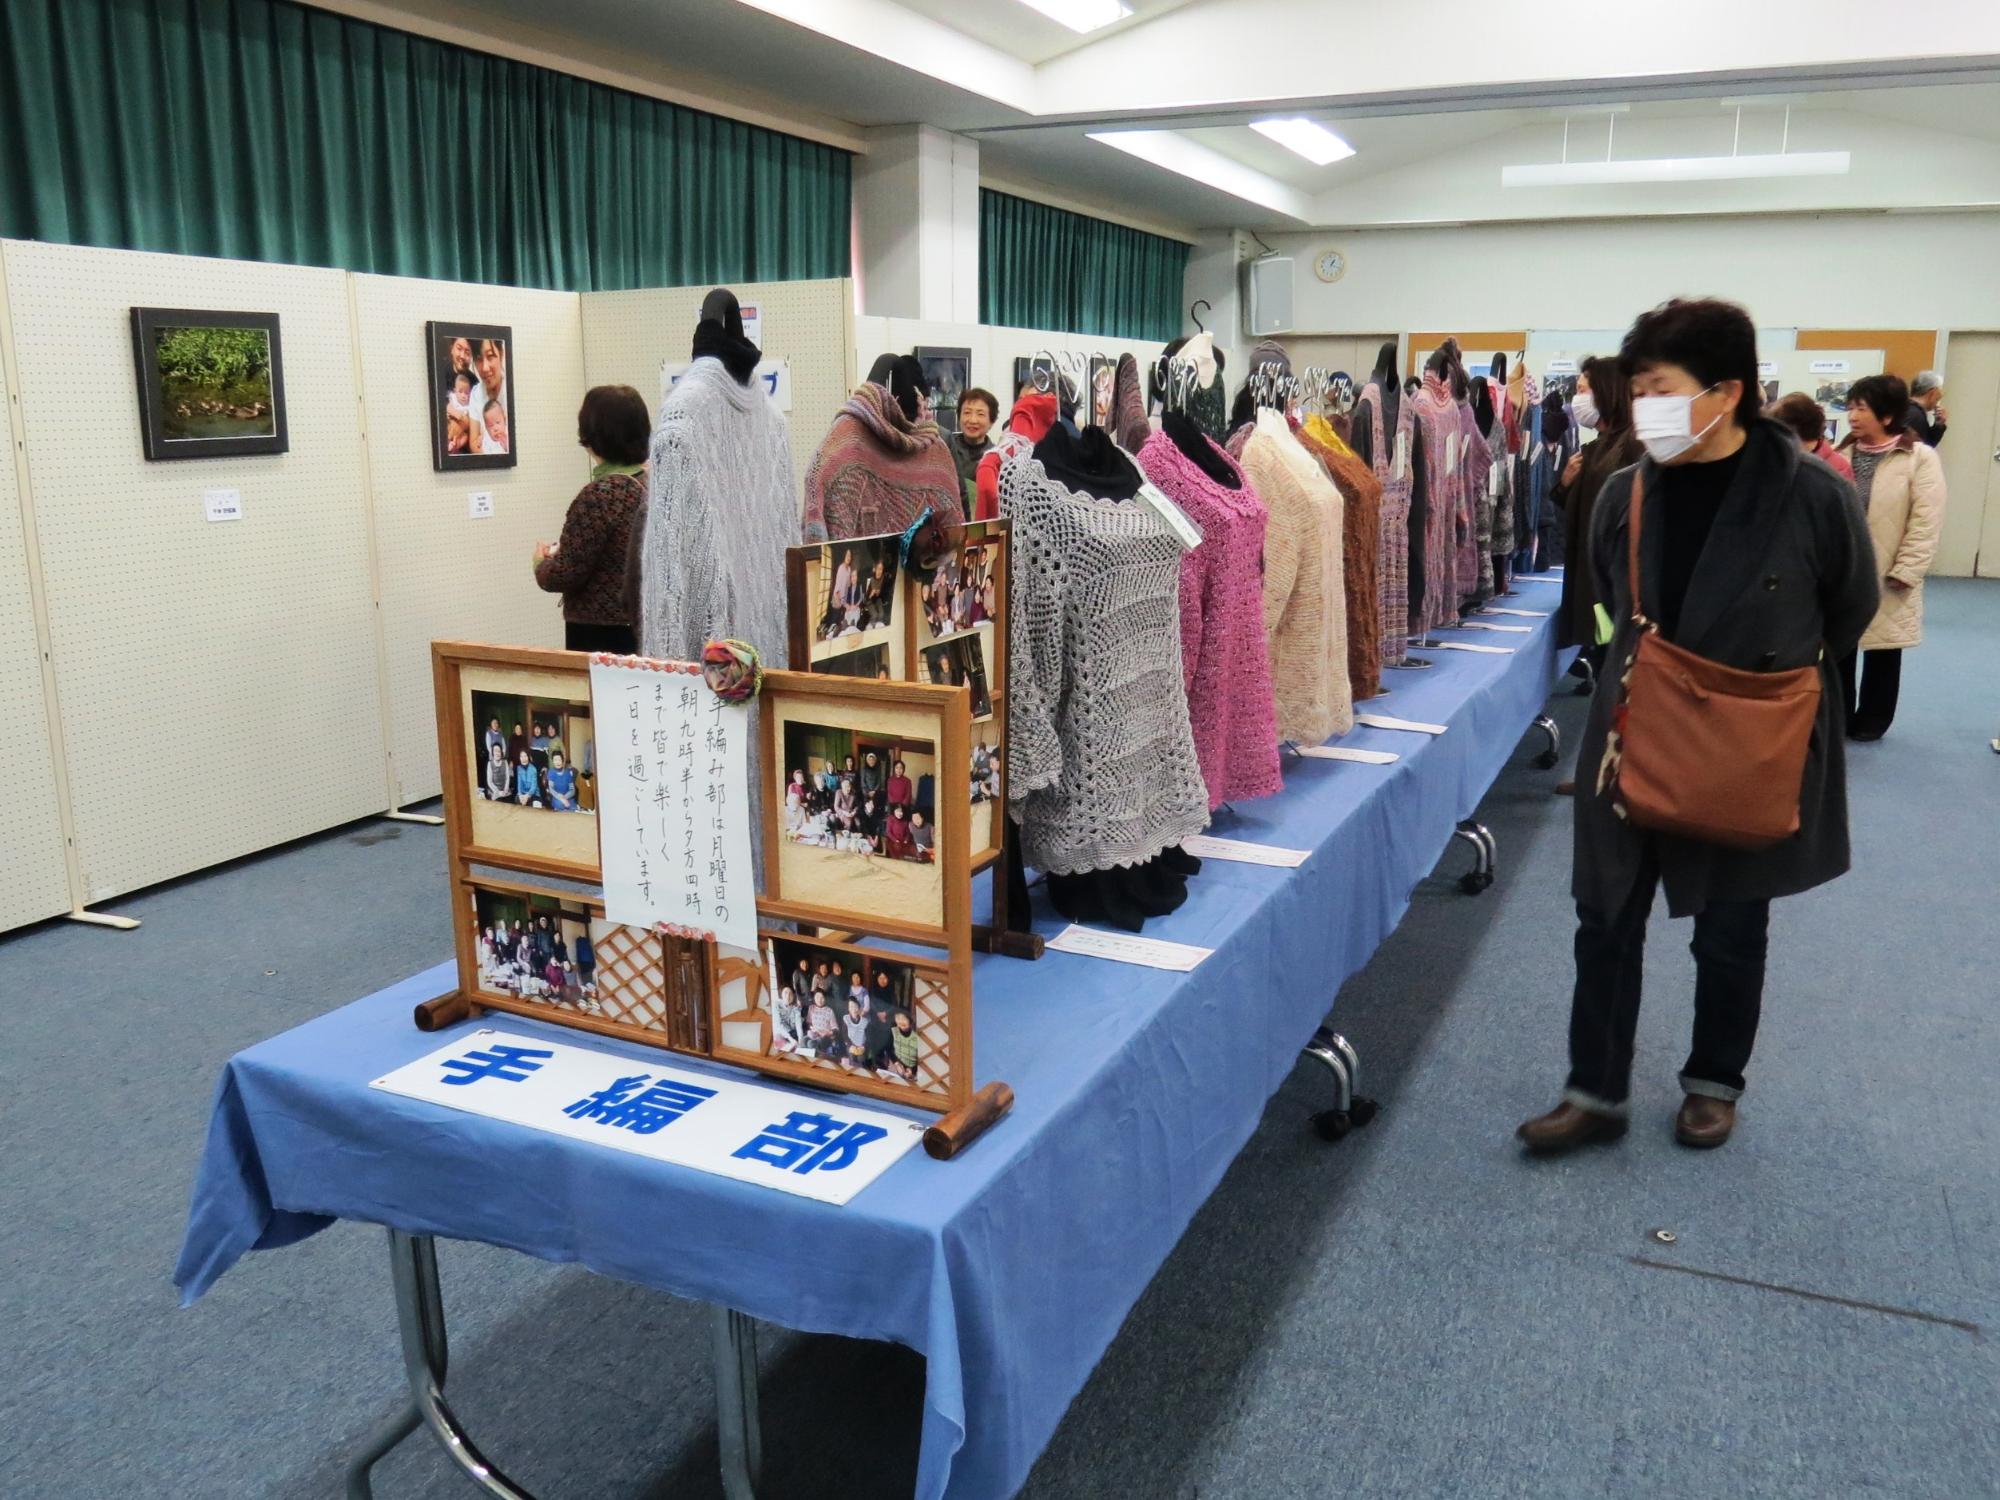 手編み部の展示で、たくさんの手編みの服が並んでいるのを見ている人の写真